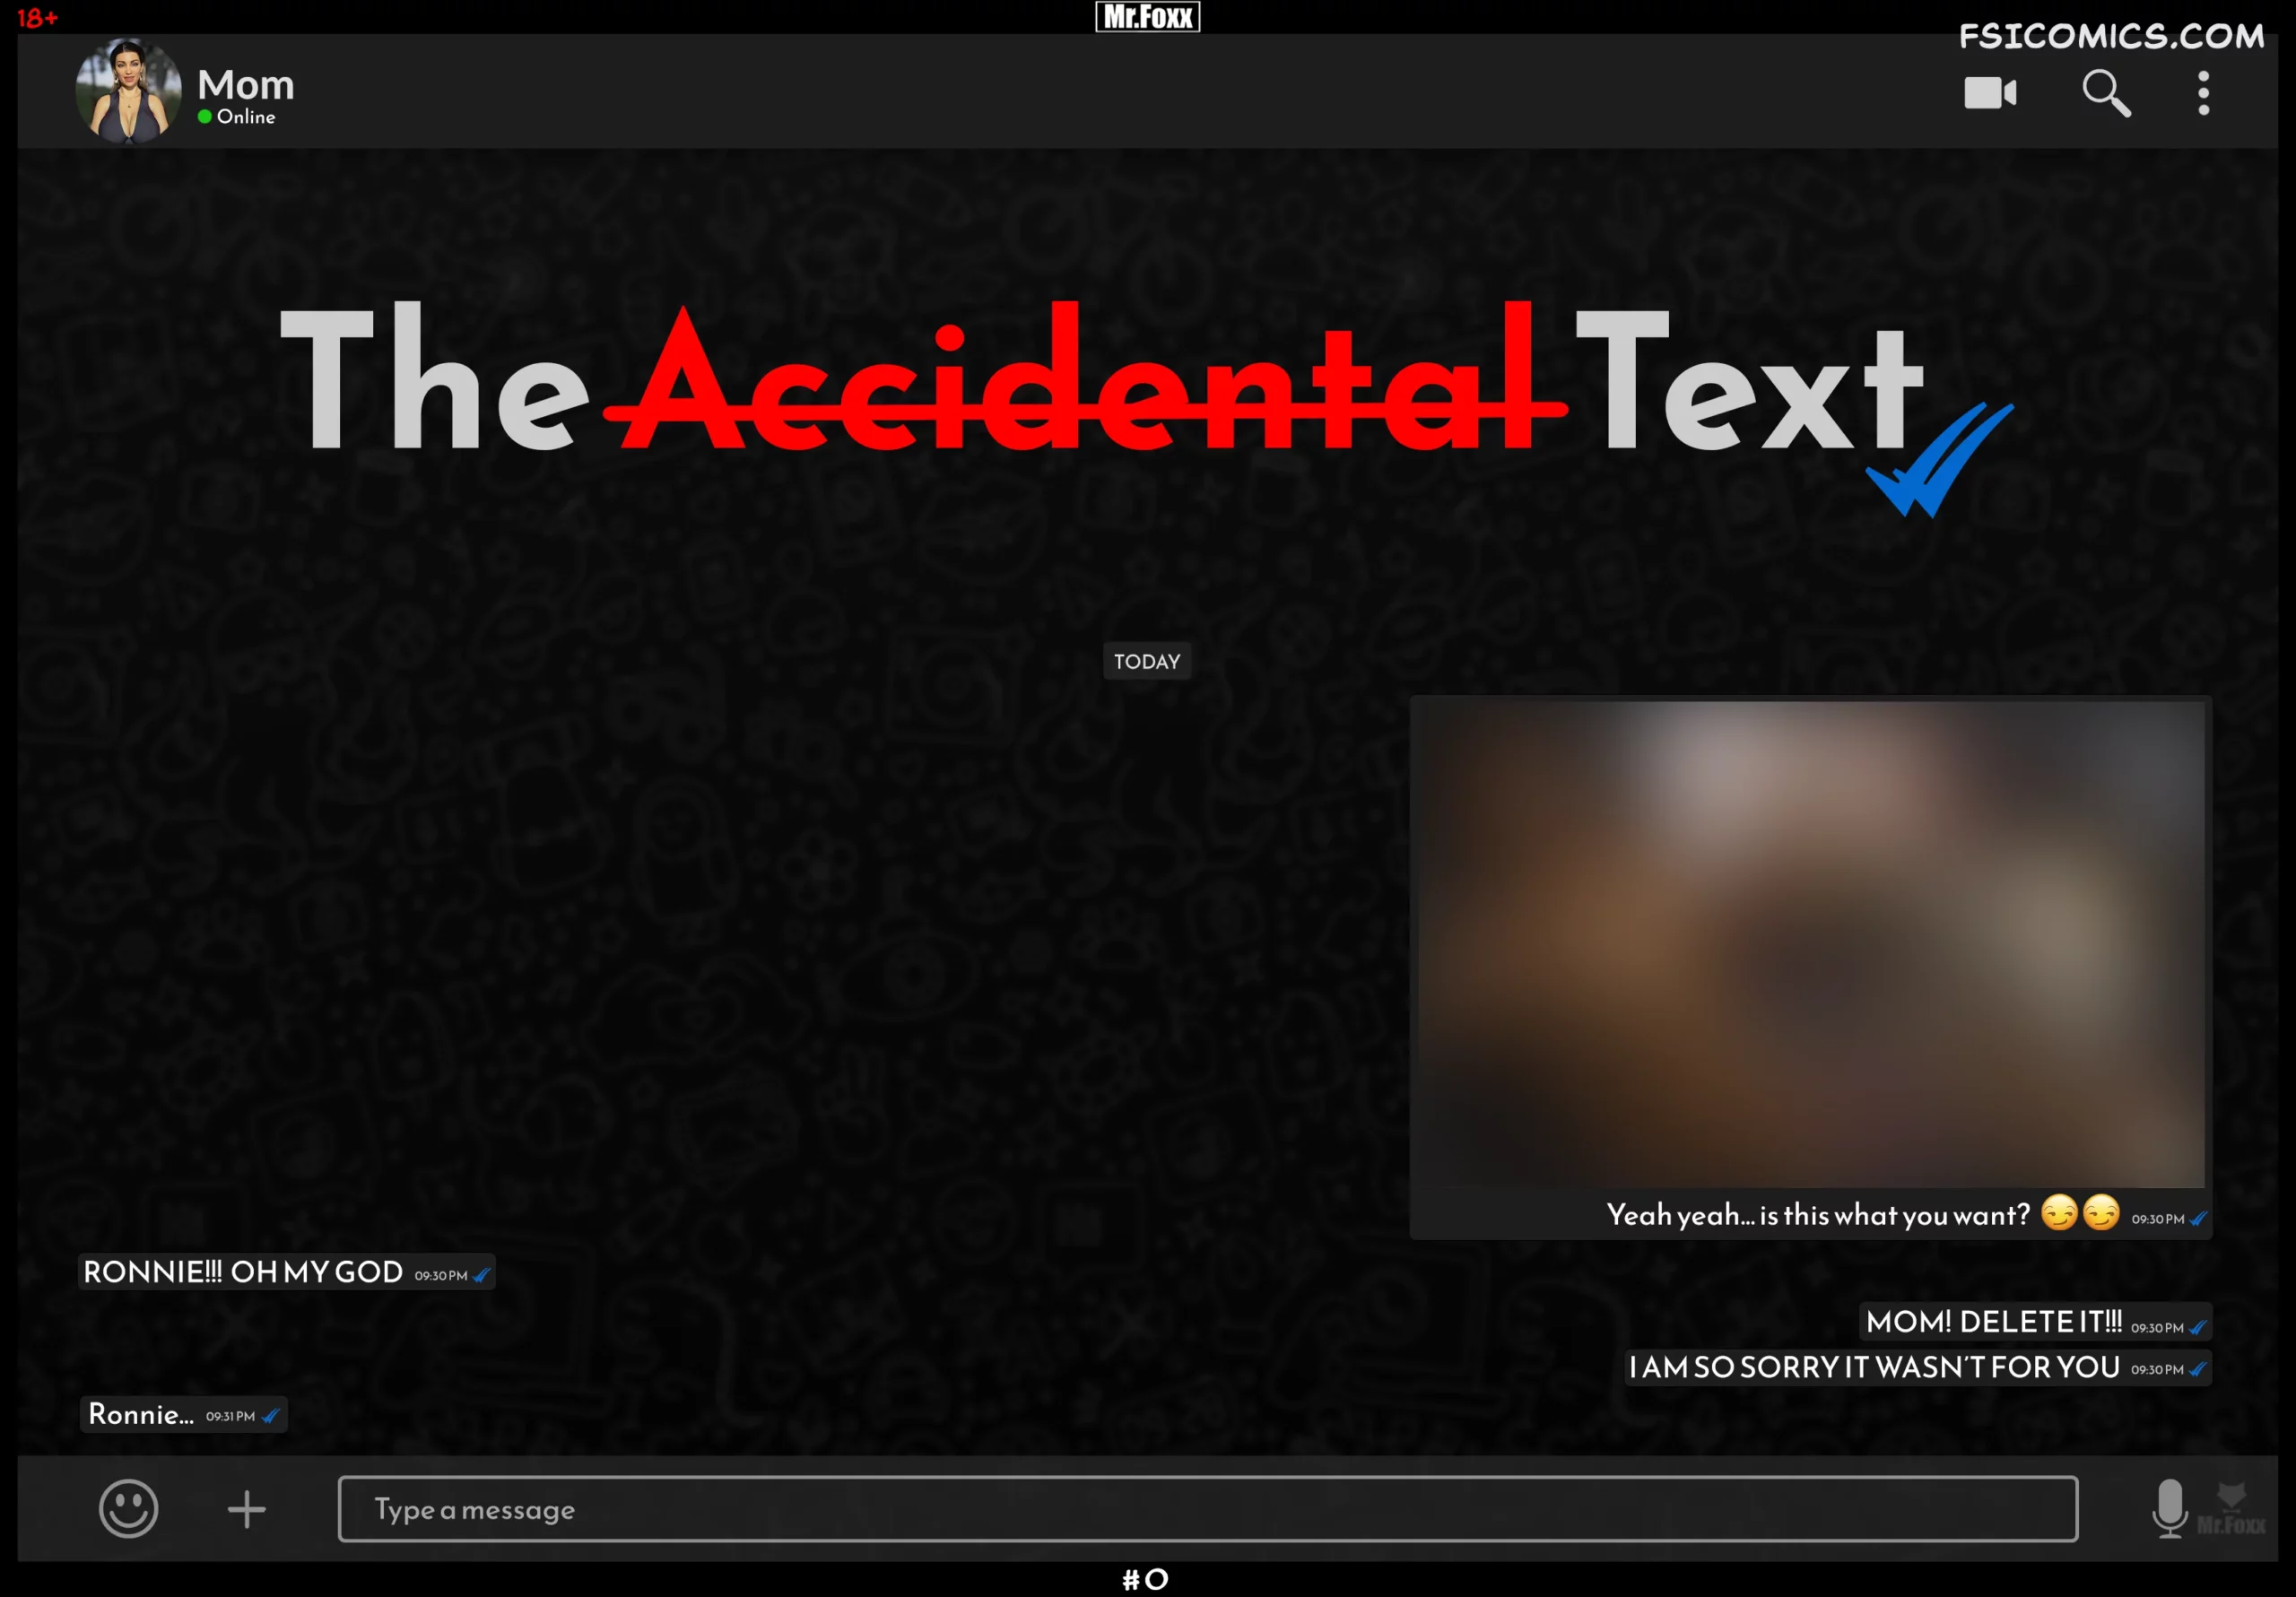 The Accidental Text - Mr.FOXX - 81 - FSIComics